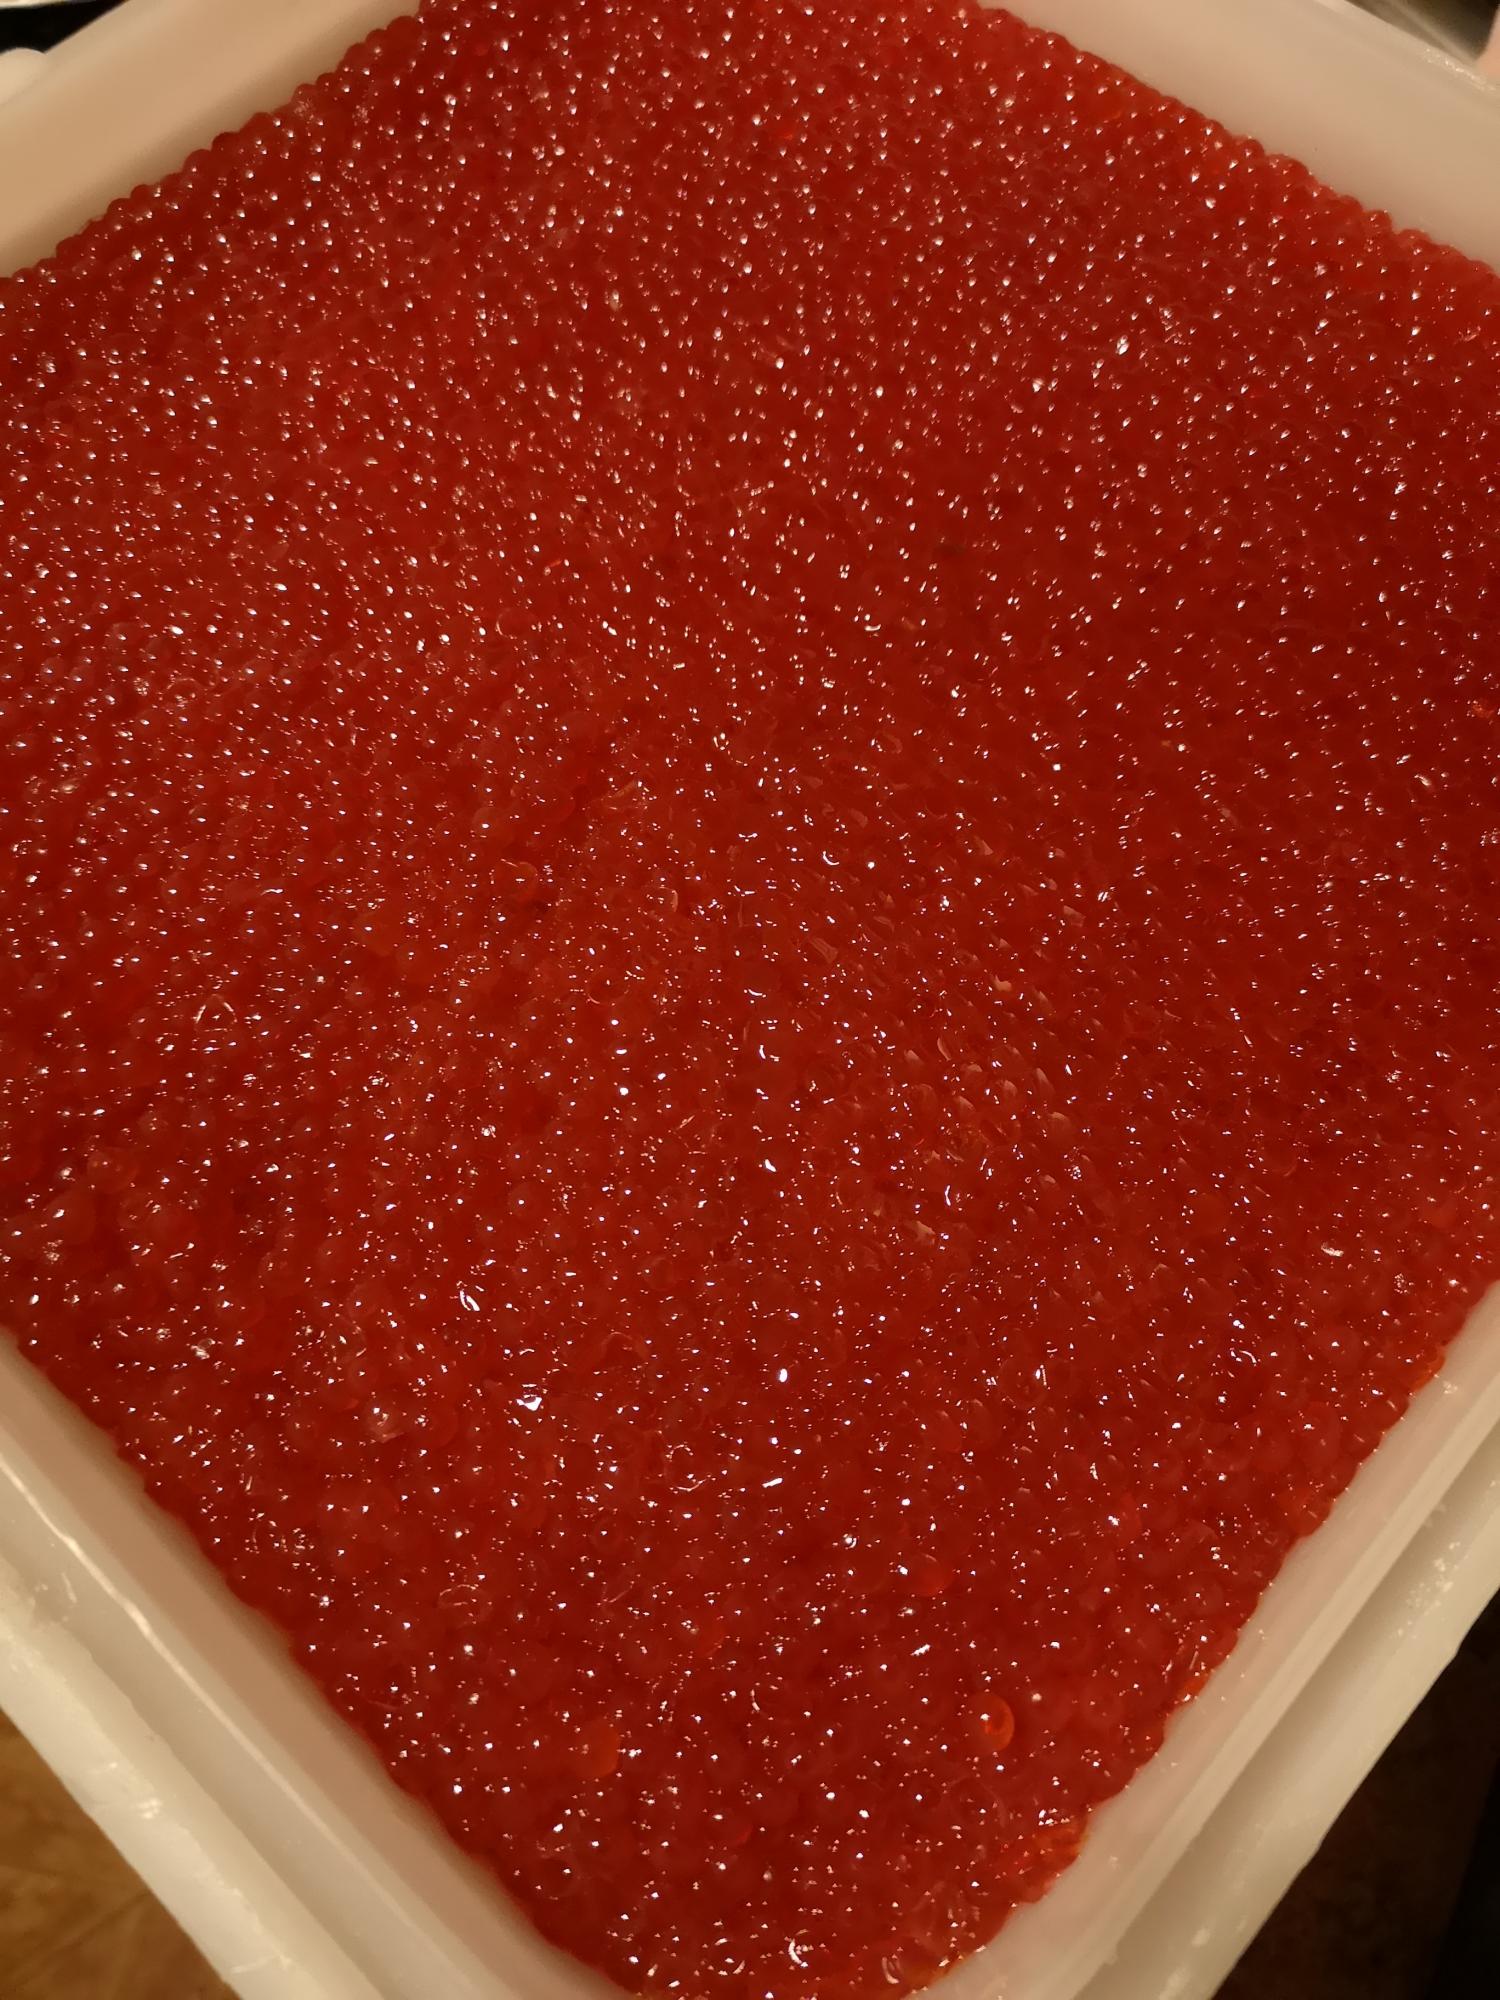 Red Salmon Caviar. Pink Salmon Caviar икра горбуши. Икра кеты горбуши форели. Красная икра Фарель в Москве. Икра форели или горбуши